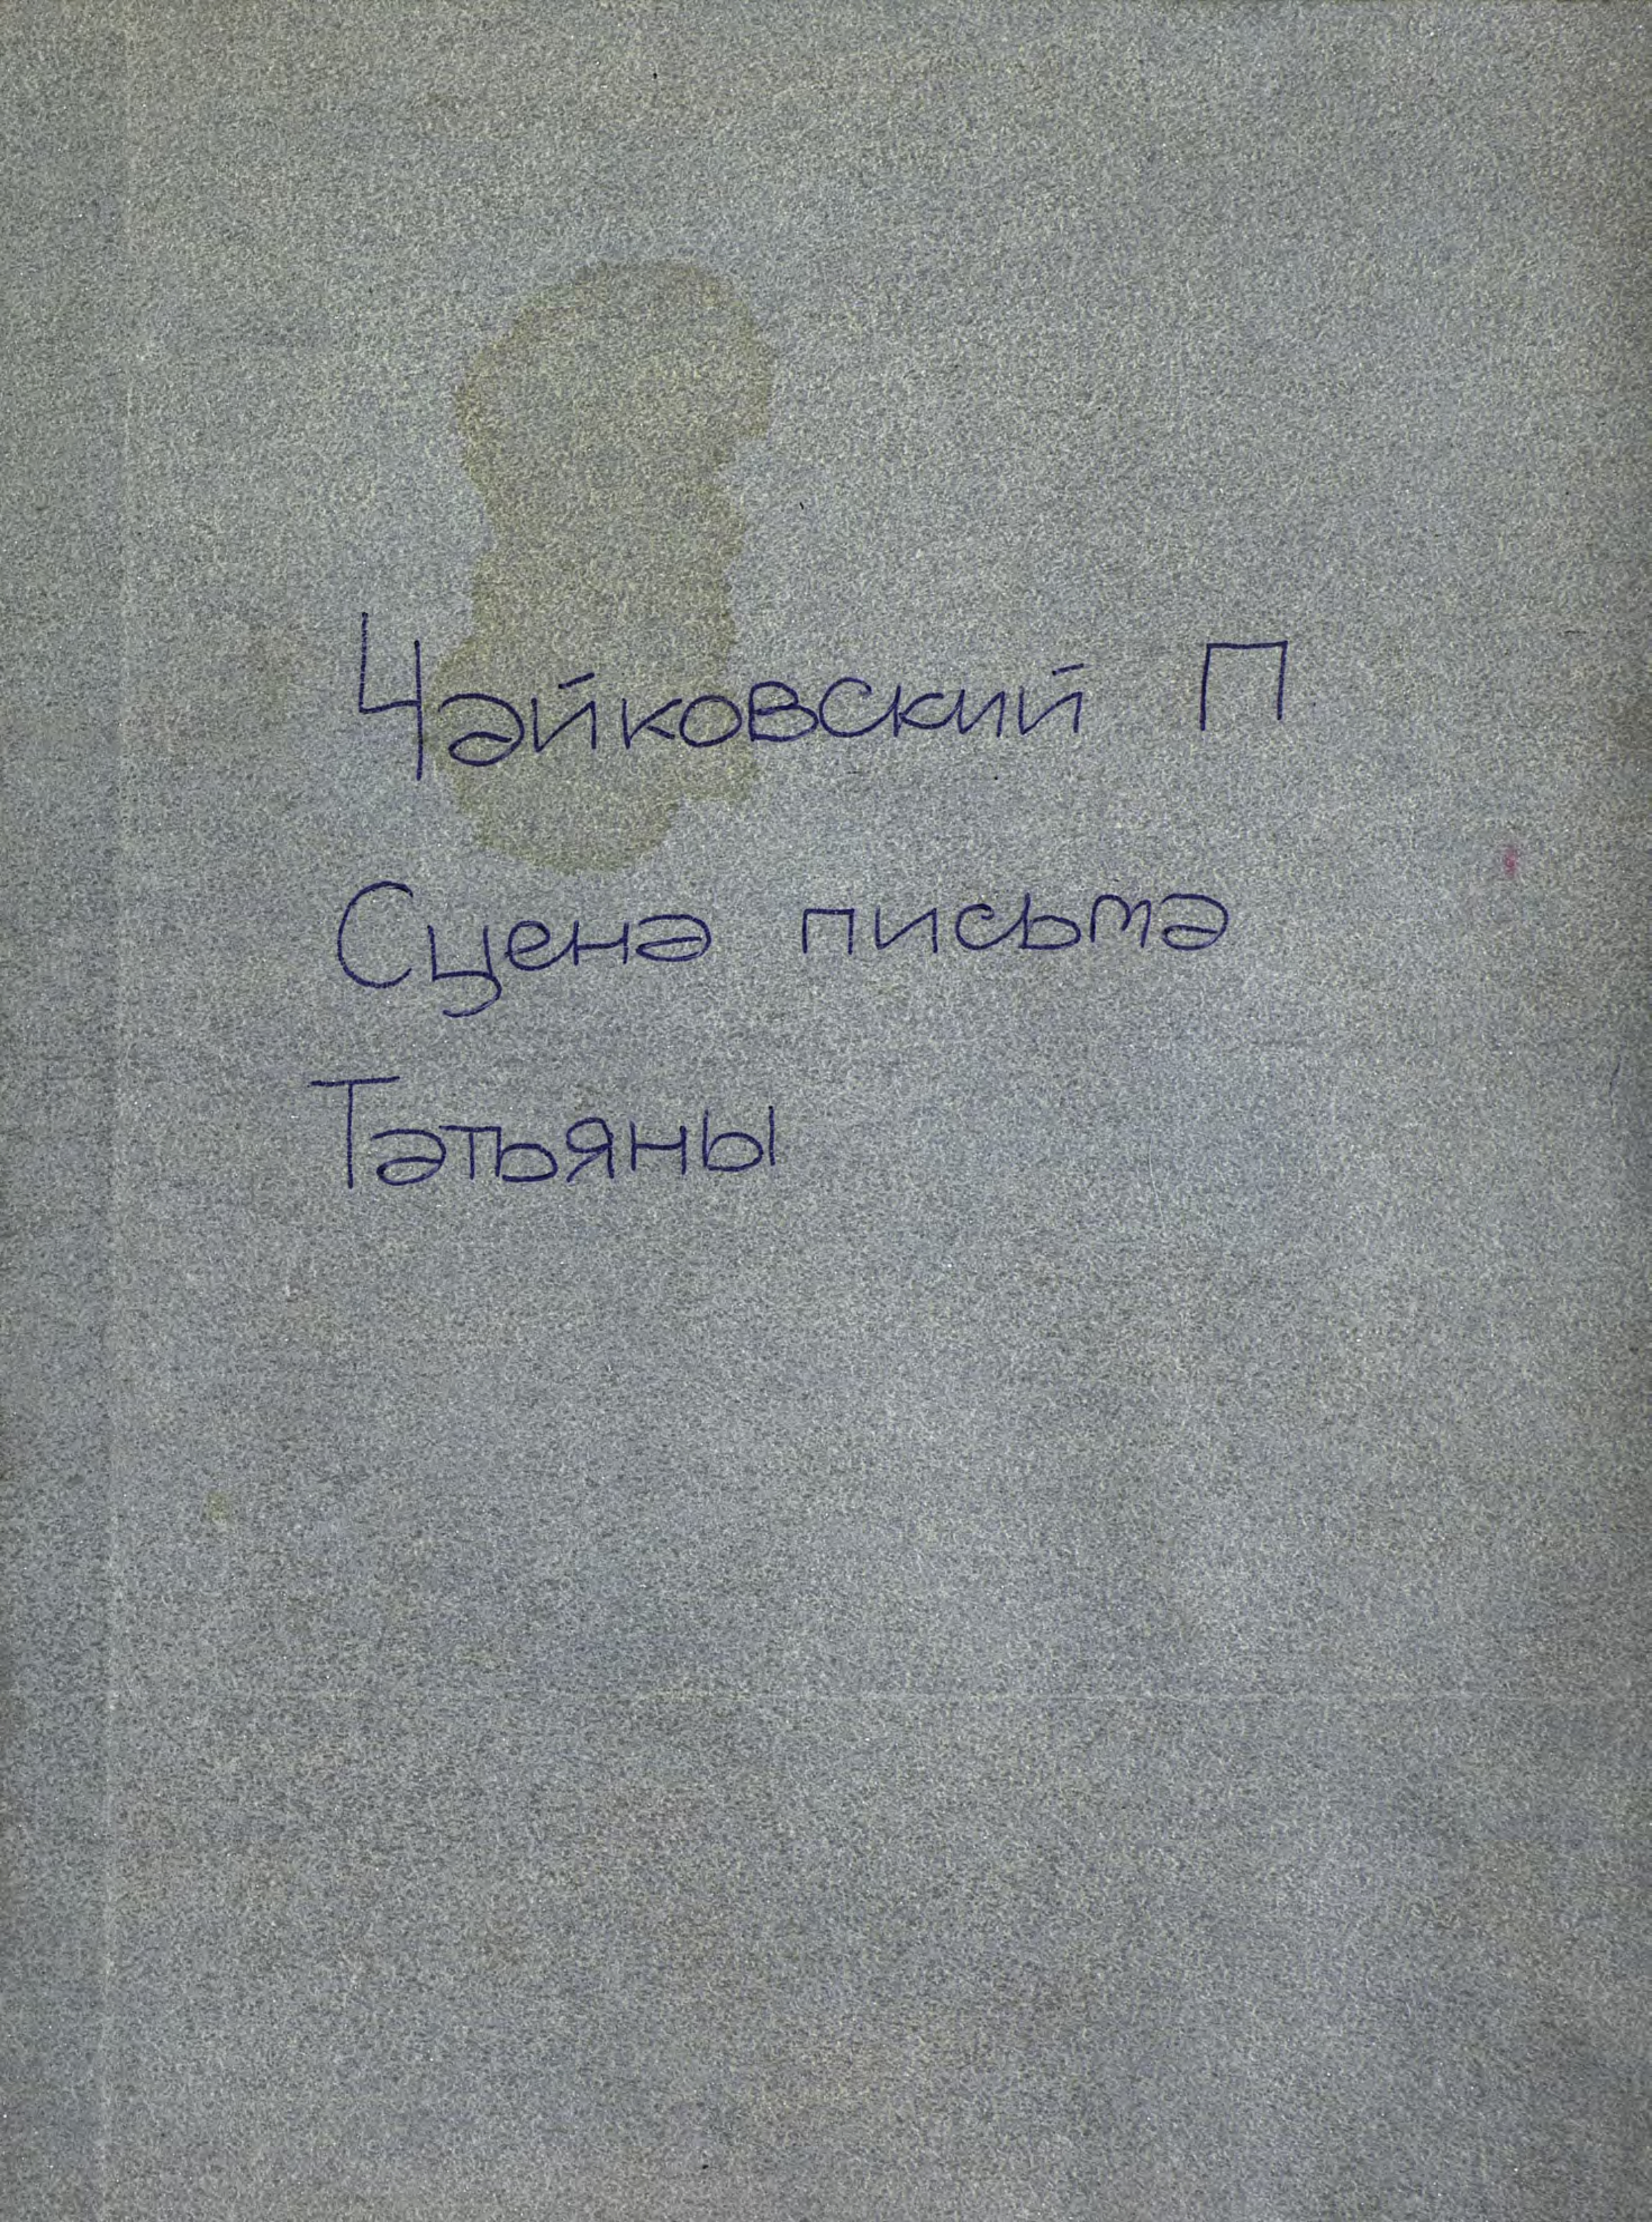 Сцена письма из оперы"Евгений Онегин"